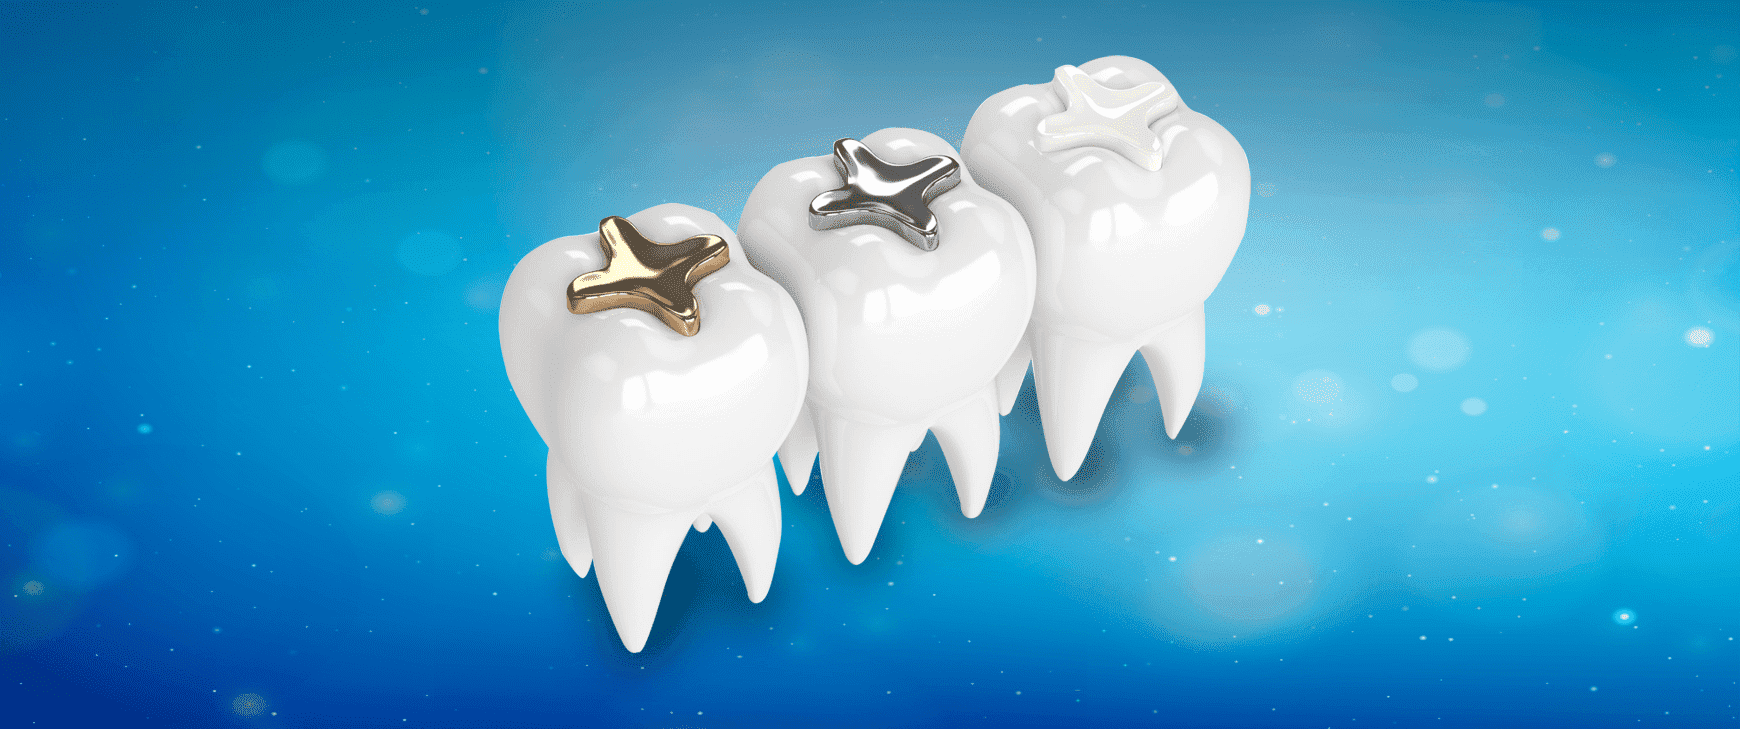 Ästhetische Zahnfüllung - Hospitadent